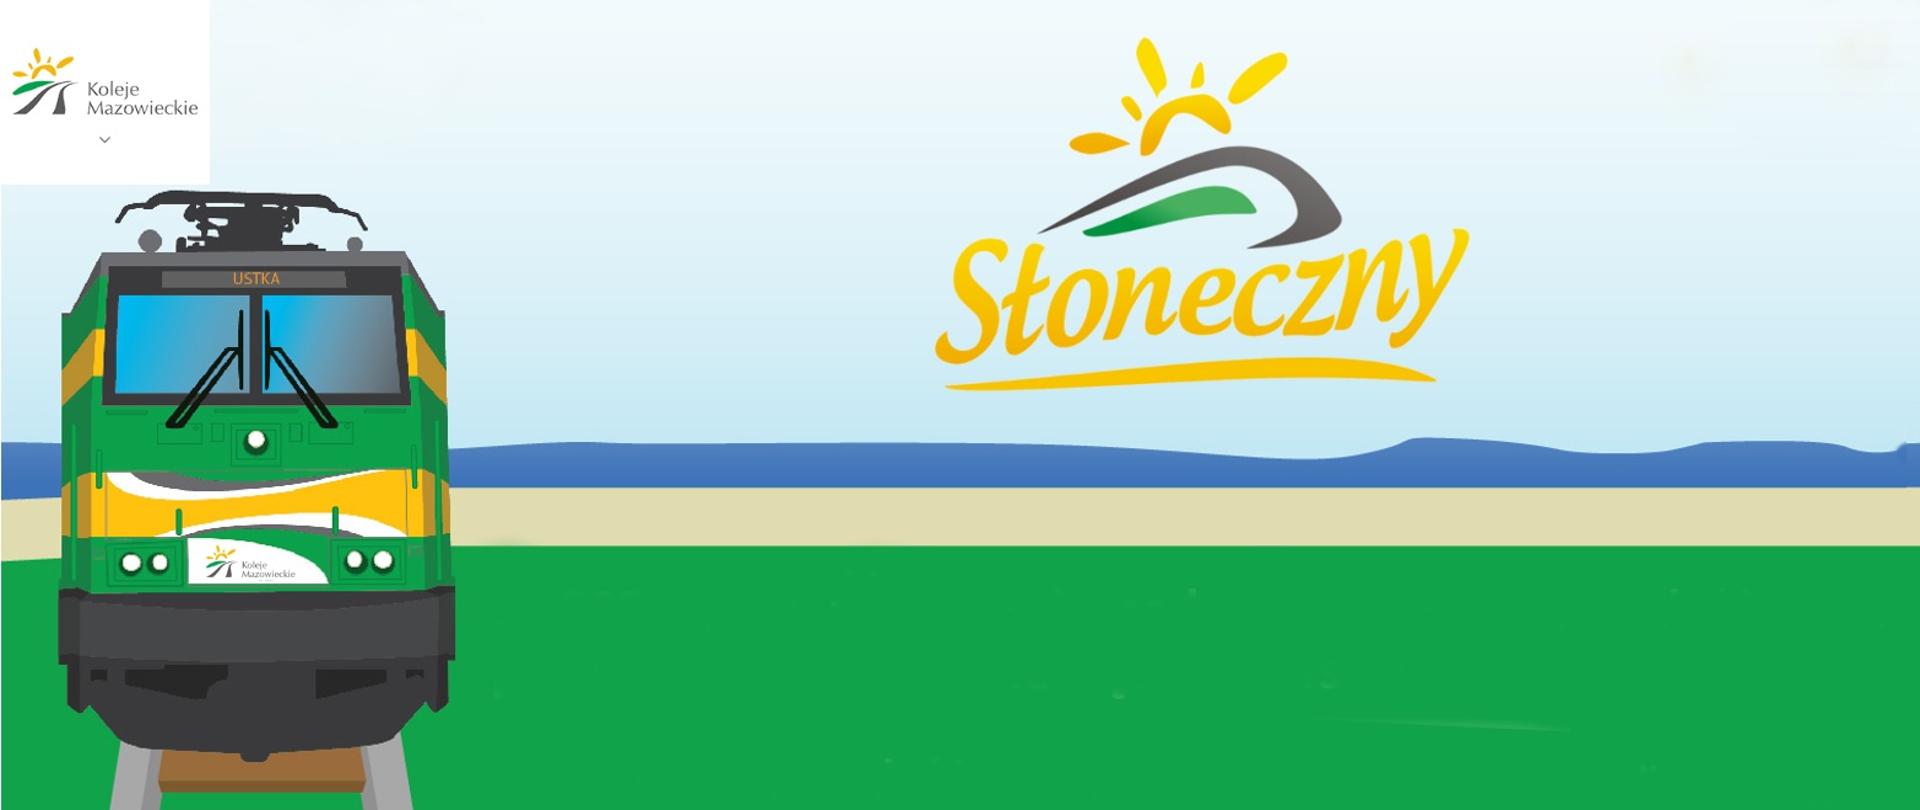 Baner promocyjny - ilustracja ,na której widoczna jest z lewej strony lokomotywa pokazana z przodu. Tło złożone z błękitnego nieba, niebieskiej linii symbolizującej morze, kolejnej symbolizującej plażę oraz zielonej symbolizującej przyrodę. W prawym górnym rogu logo Kolei Mazowieckich, a na środku logo pociągu słoneczny (żółte słoneczko wychodzące zza gór)